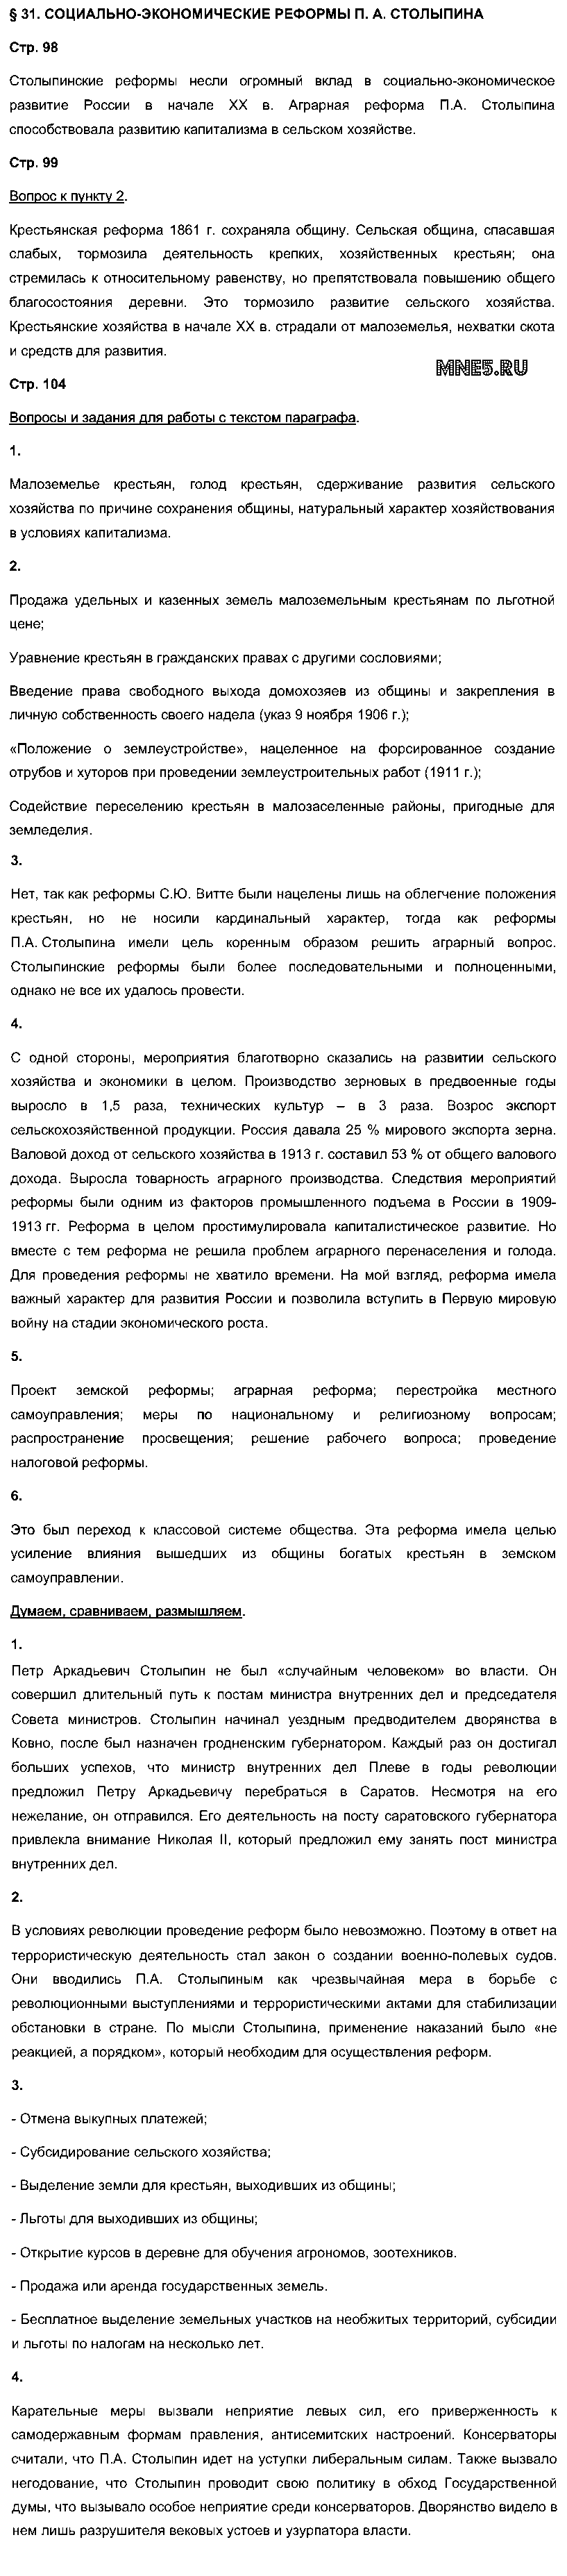 ГДЗ История 9 класс - §31. Социально-экономические реформы Столыпина